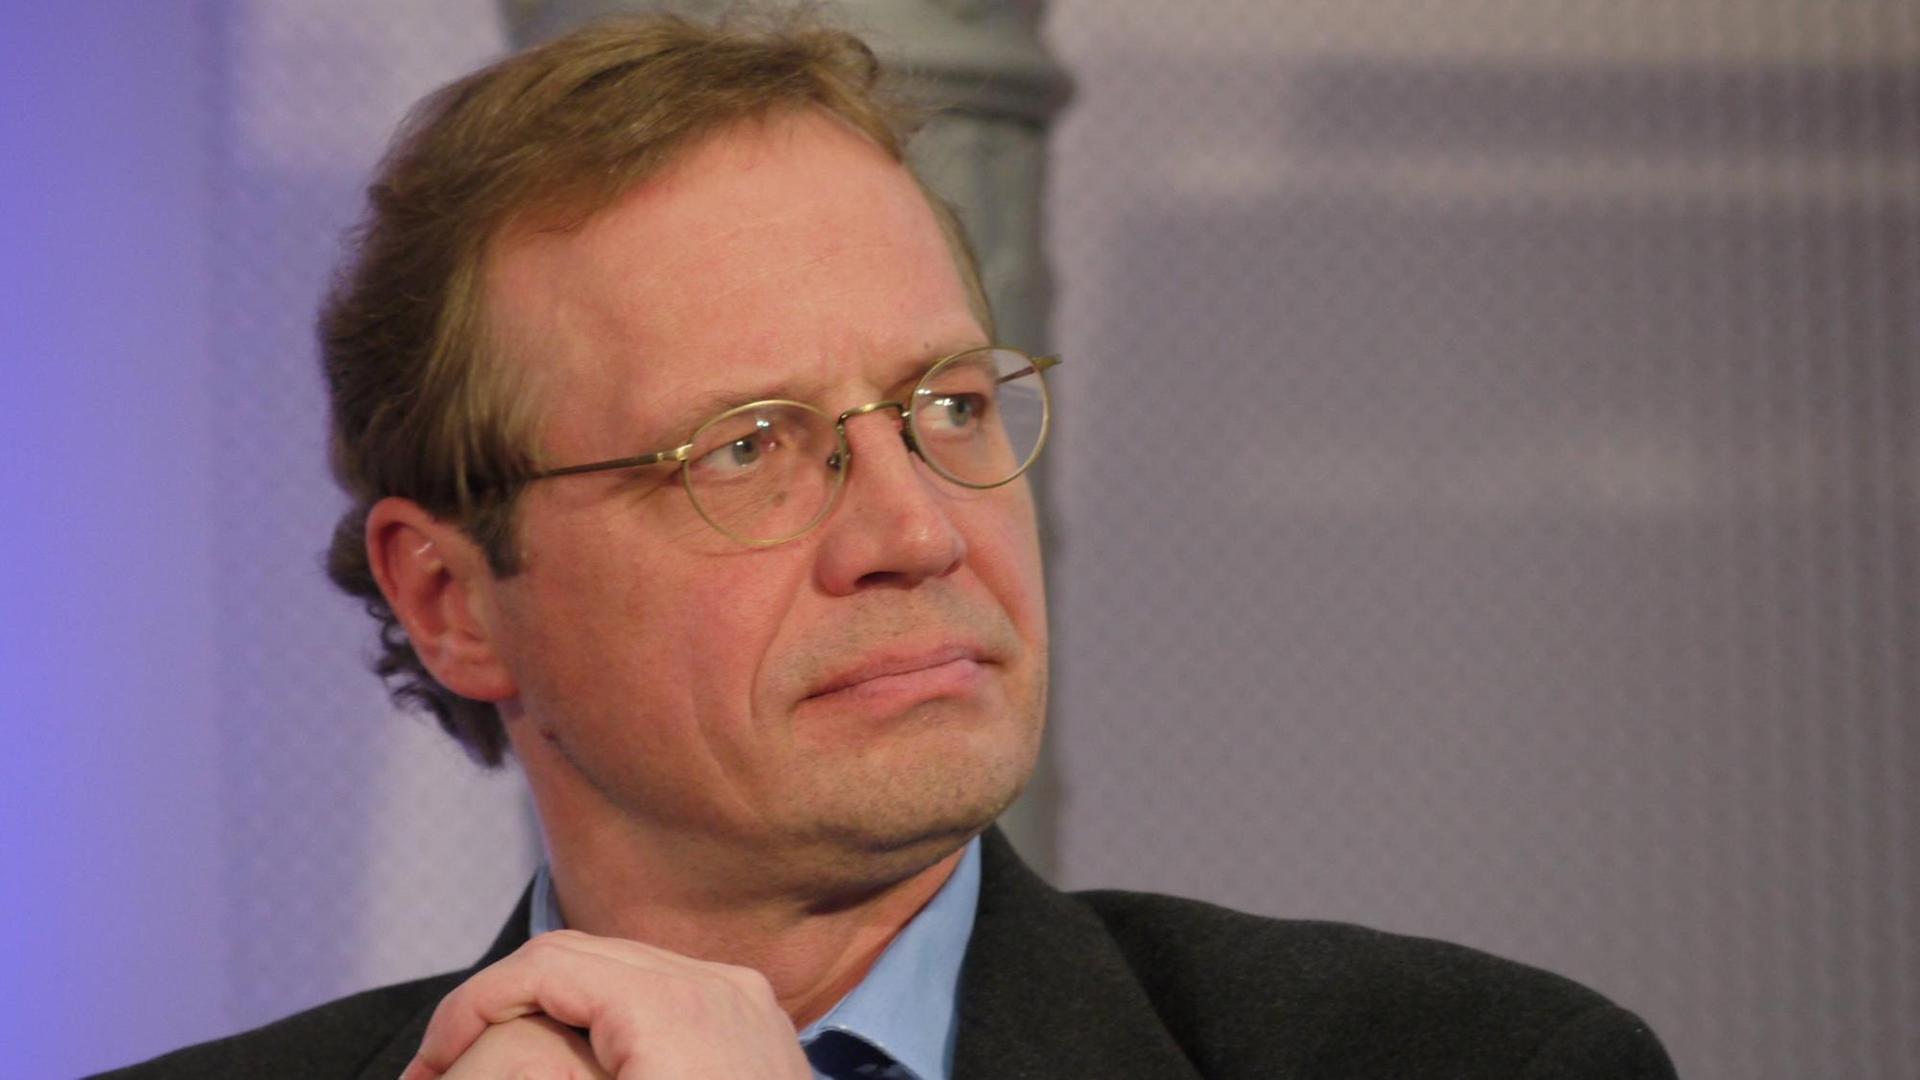 Hermann Ott als Mitglied des Bundestages für Bündnis 90/Die Grünen im Jahr 2010